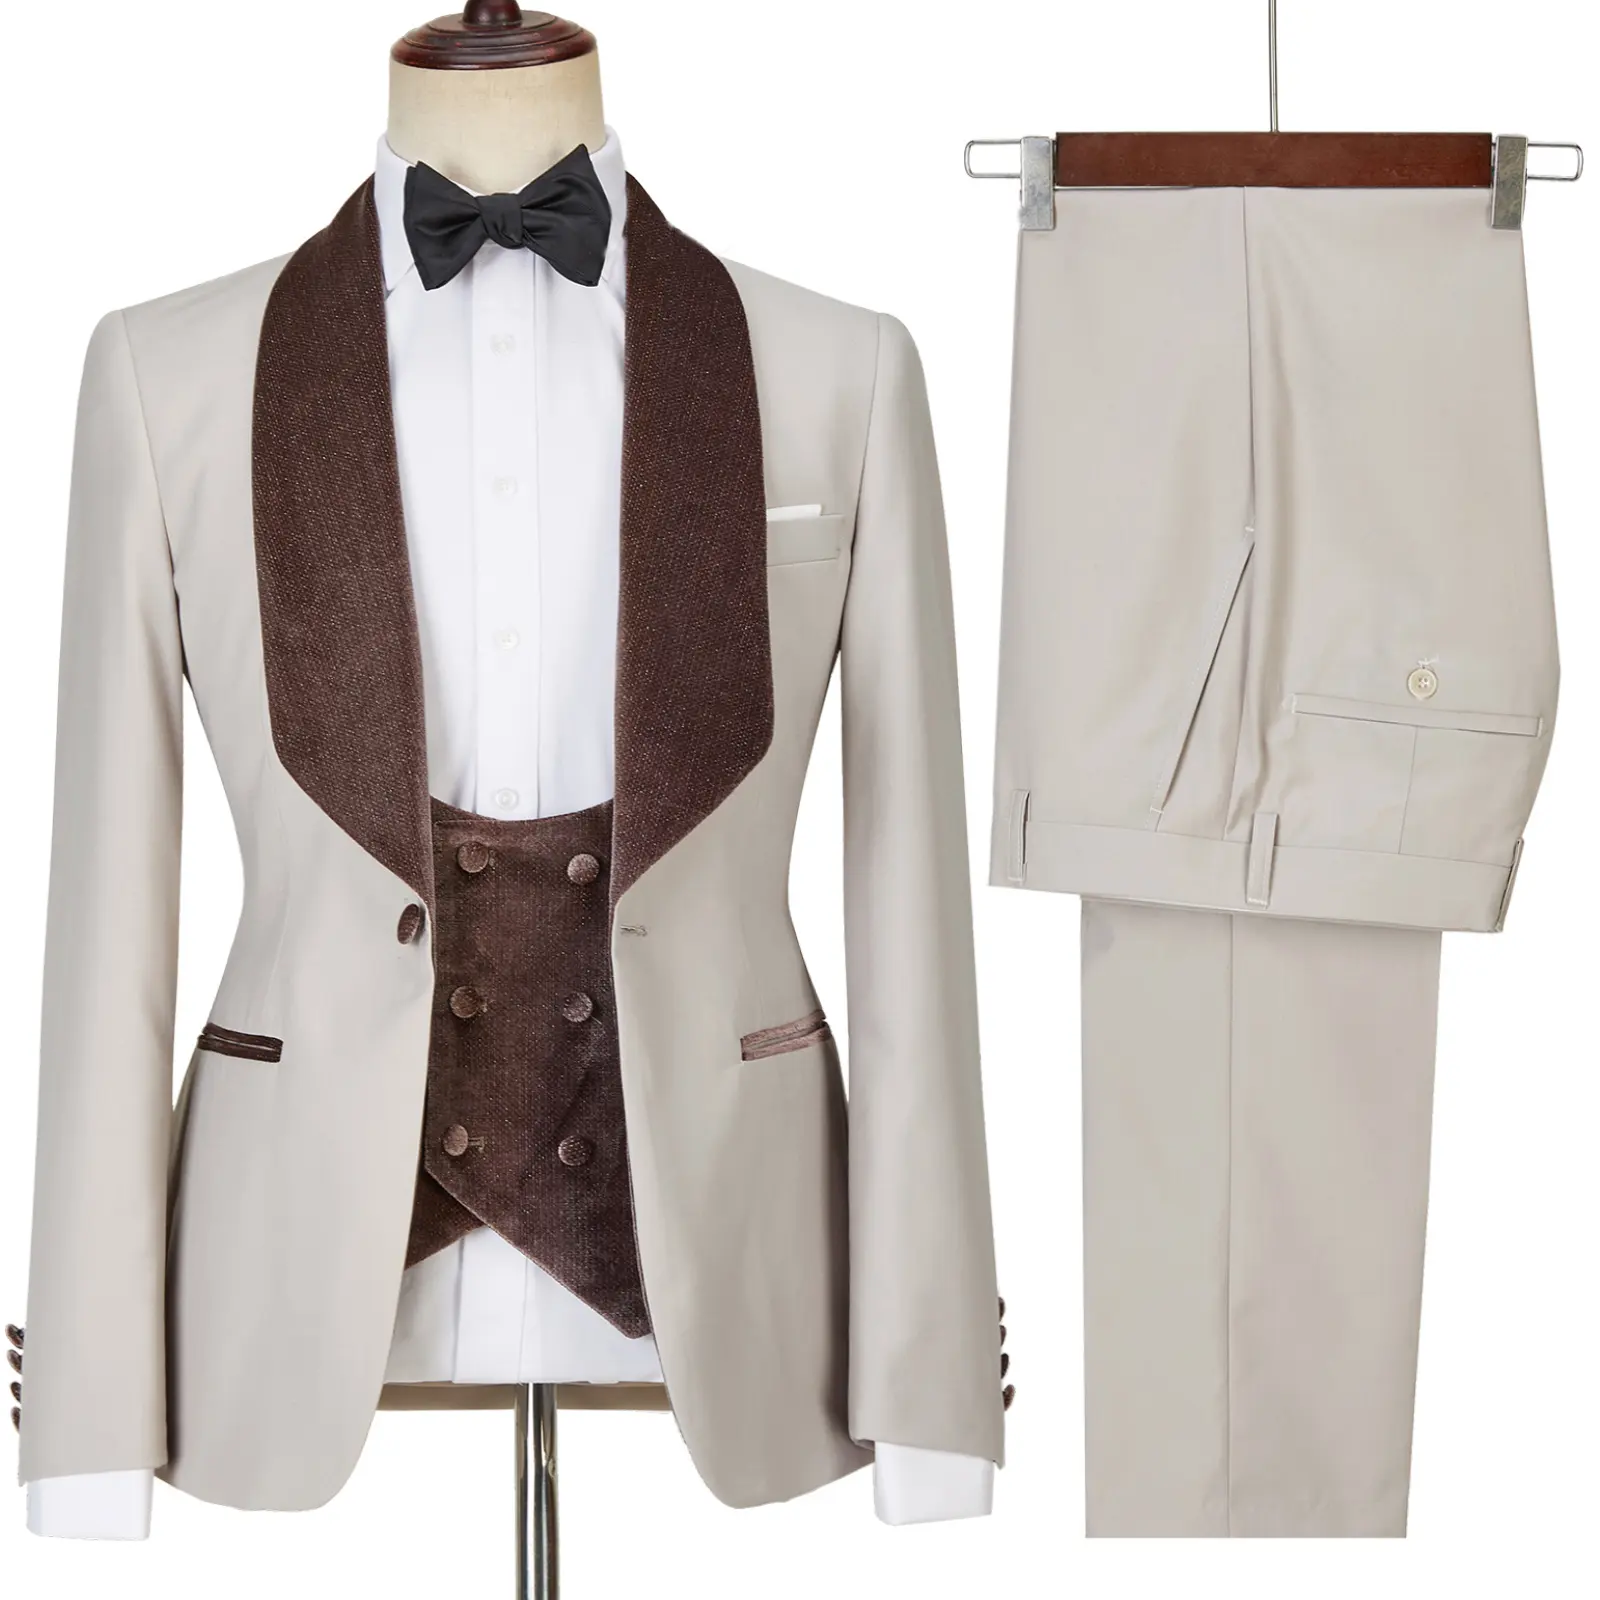 नवीनतम कोट डिजाइन पुरुषों सूट दर्जी से बनाया टक्सेडो 3 टुकड़े ब्लेजर्स शादी पार्टी गायक पुरूष कॉस्टयूम Homme ब्लू पुरुषों सूट